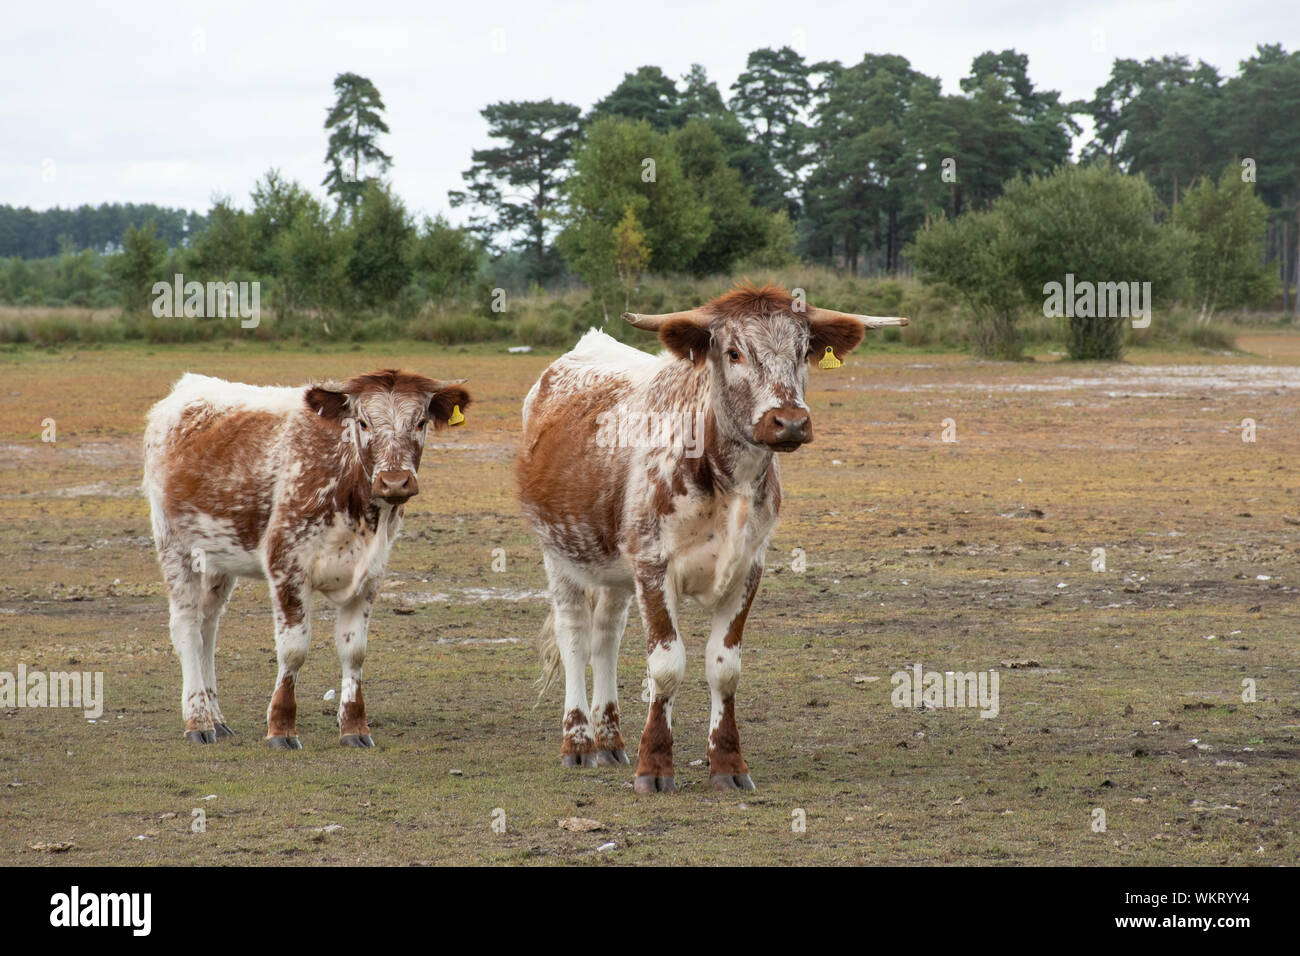 Englisch longhorn Rinder (früher Lancashire Rinder genannt), Mutter und Kalb, eine braune und weiße Rasse, Woolmer Forest, Großbritannien Stockfoto